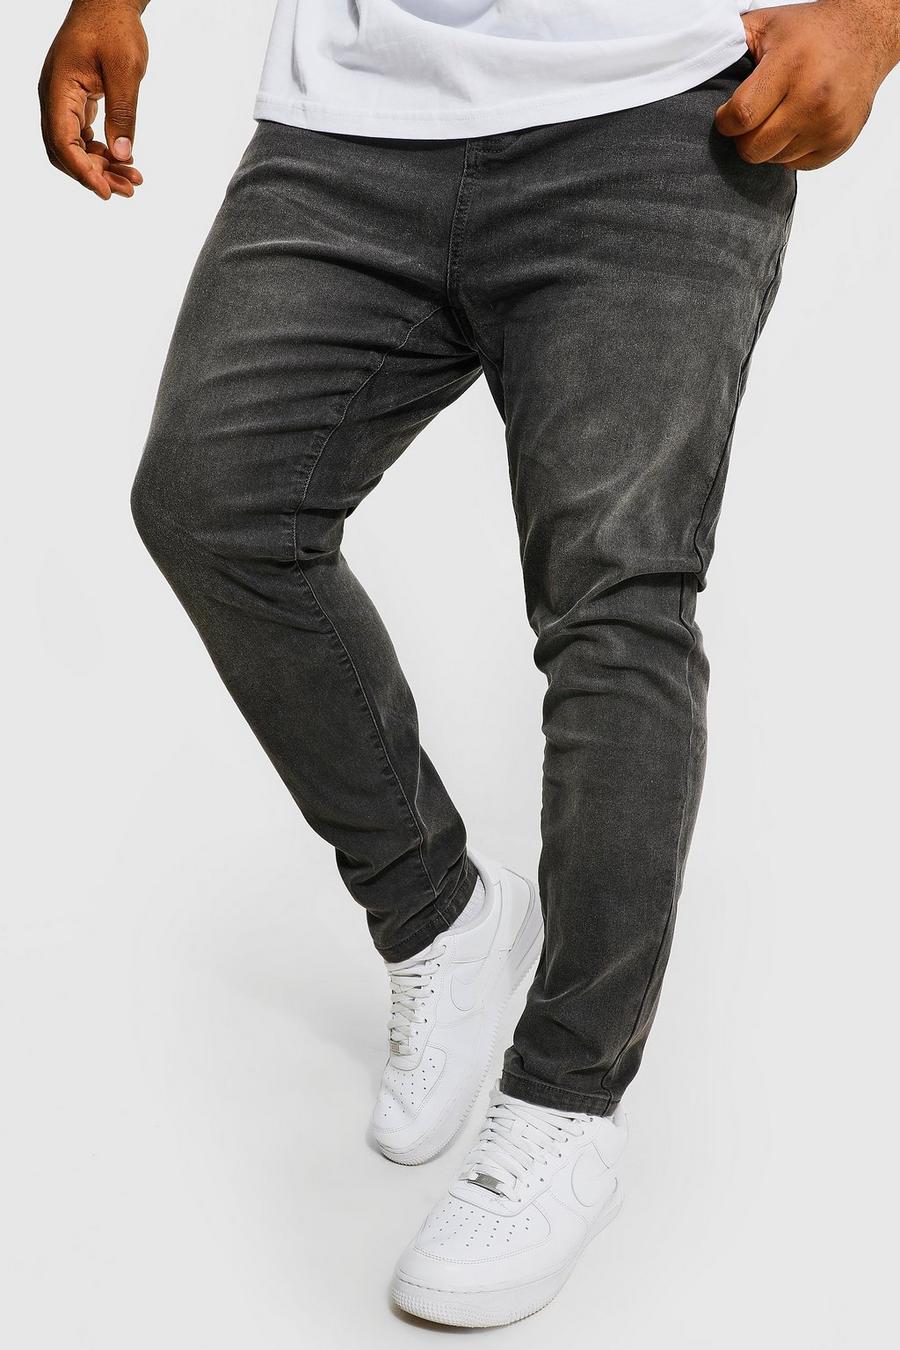 Jeans Plus Size Super Skinny Fit con poliestere riciclato, Charcoal grigio